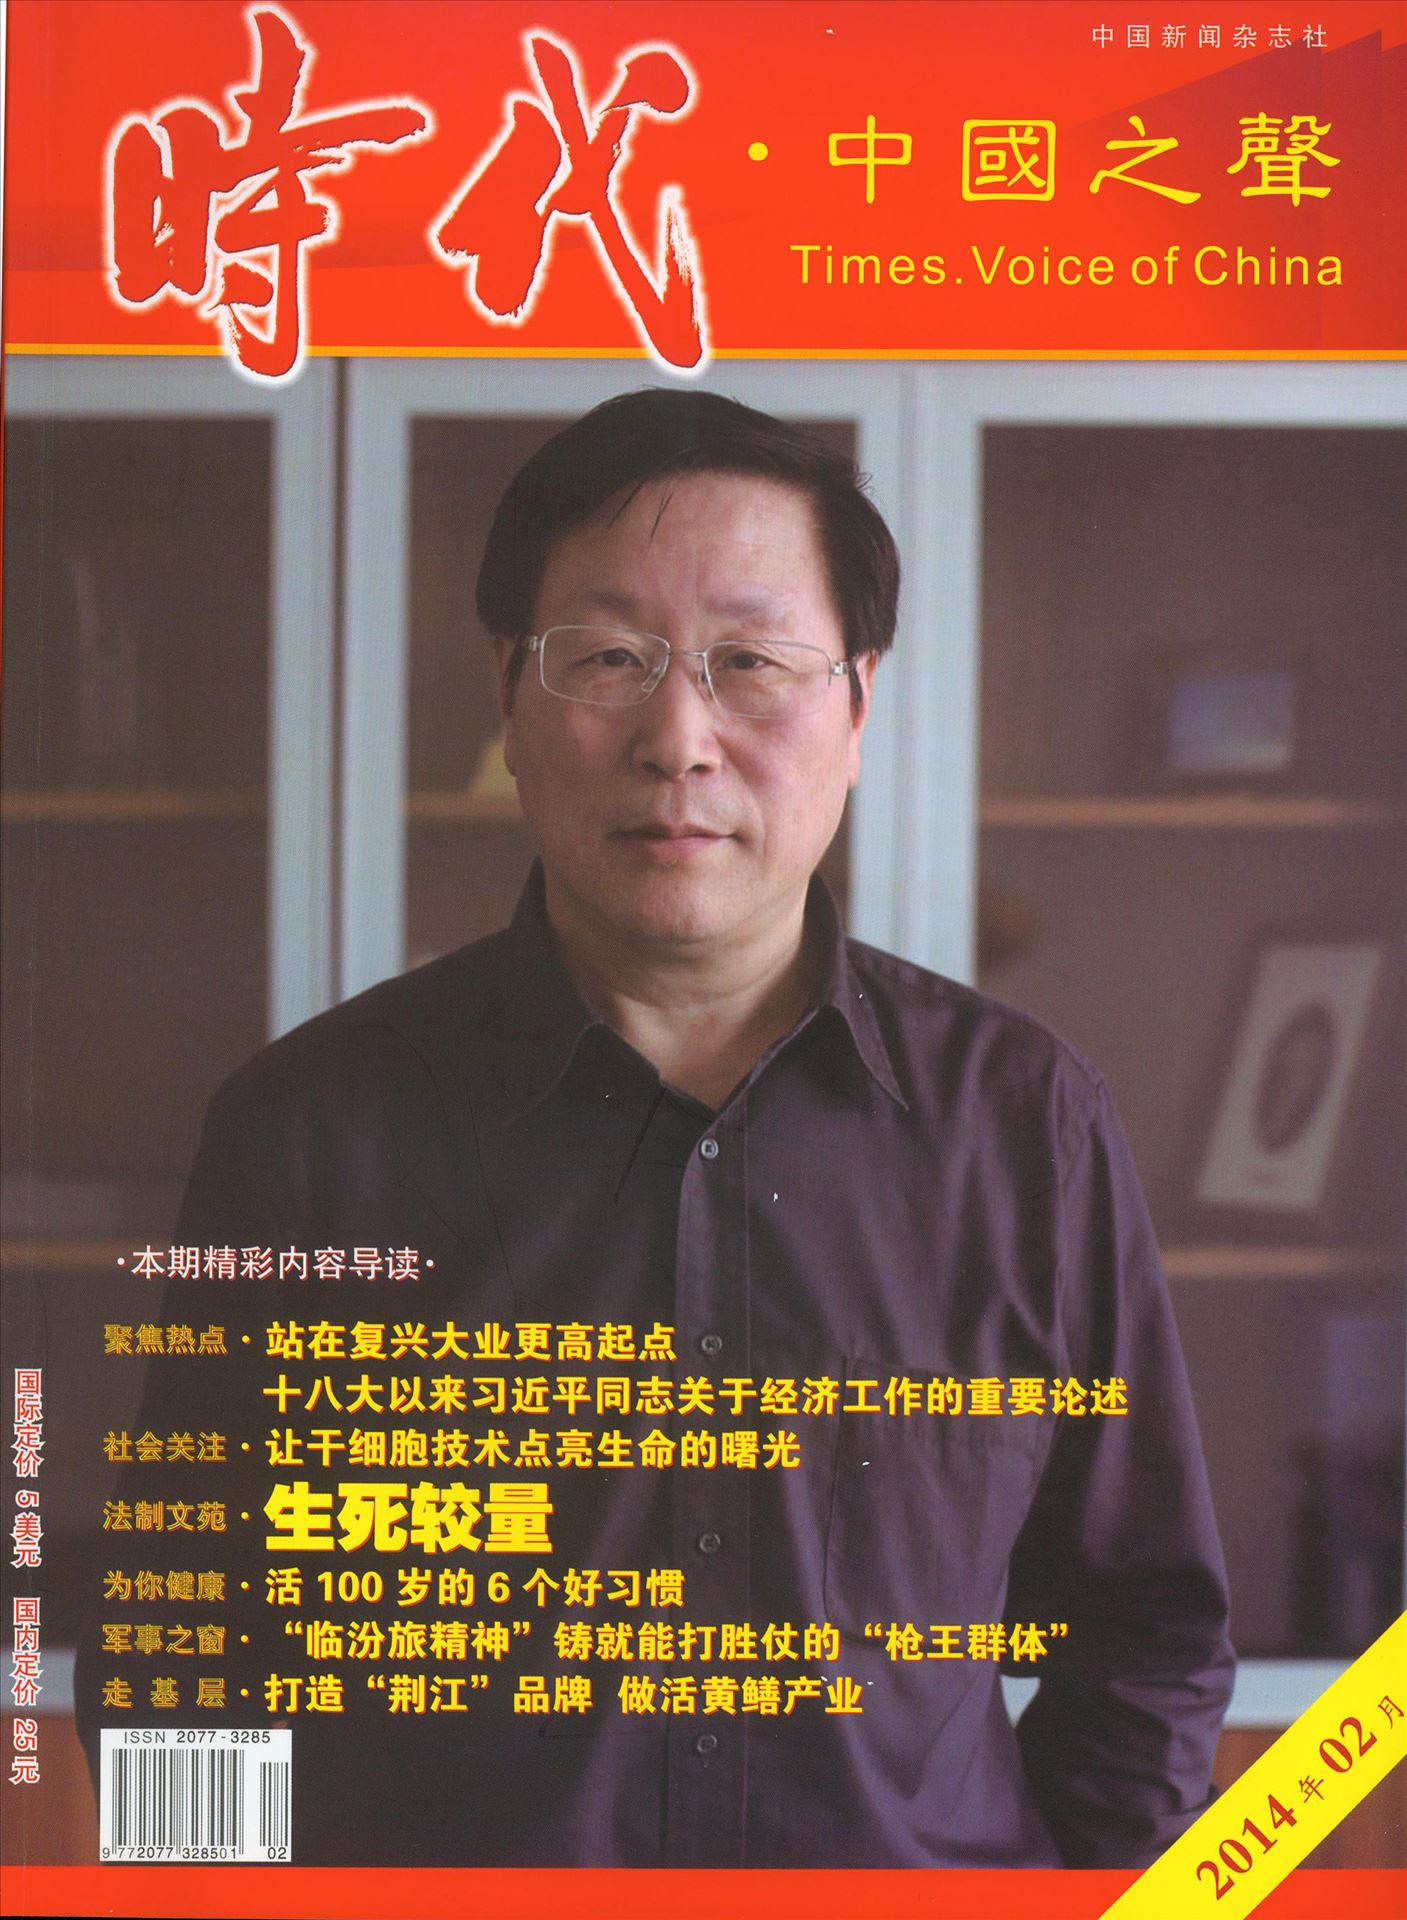 韩忠朝教授受邀接受《时代•中国之声》专访目录